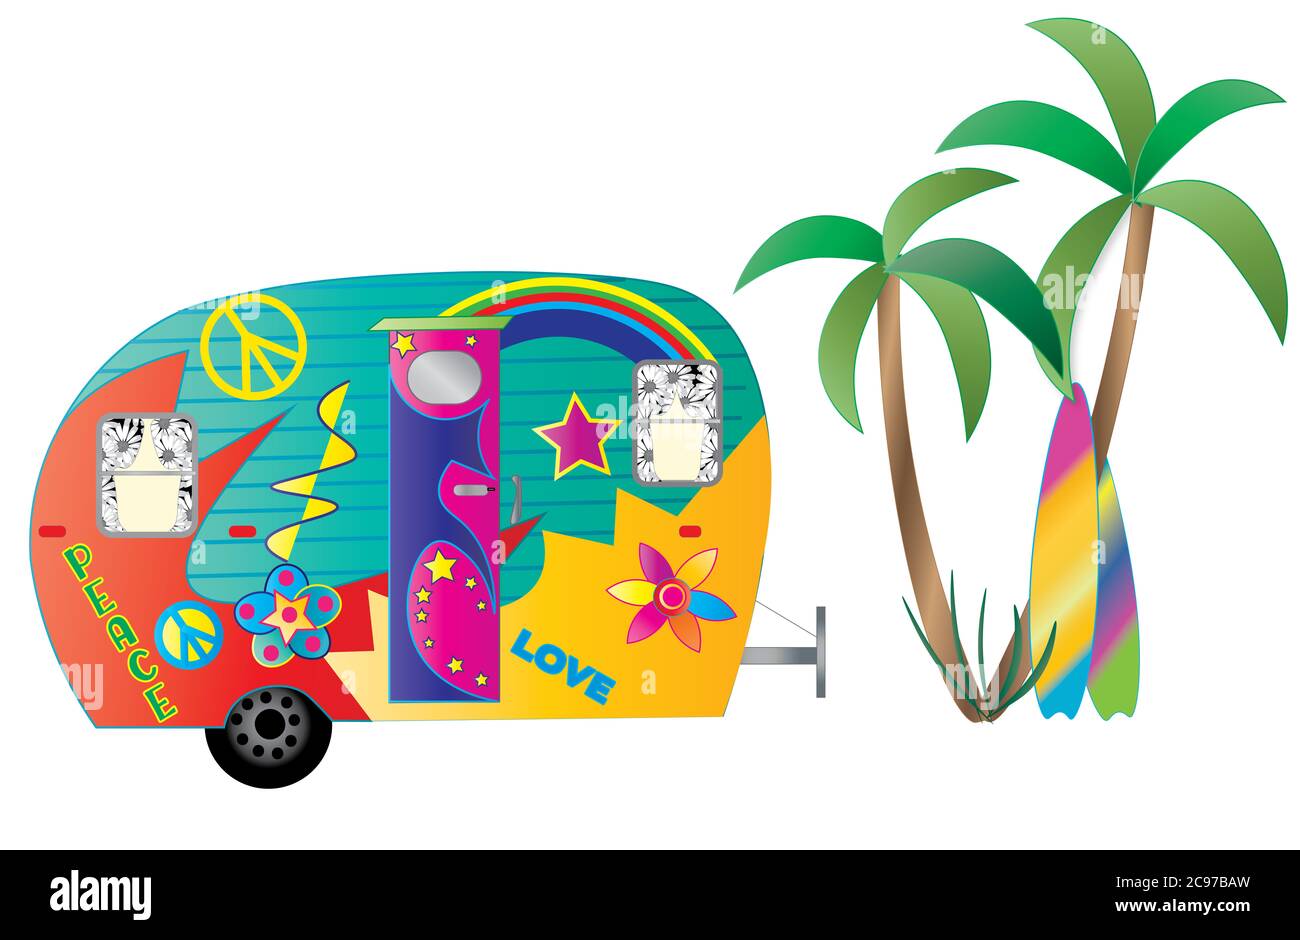 Divertente e colorata illustrazione grafica di un camper decorato con hippie, palme e molto altro. Colori vivaci Foto Stock